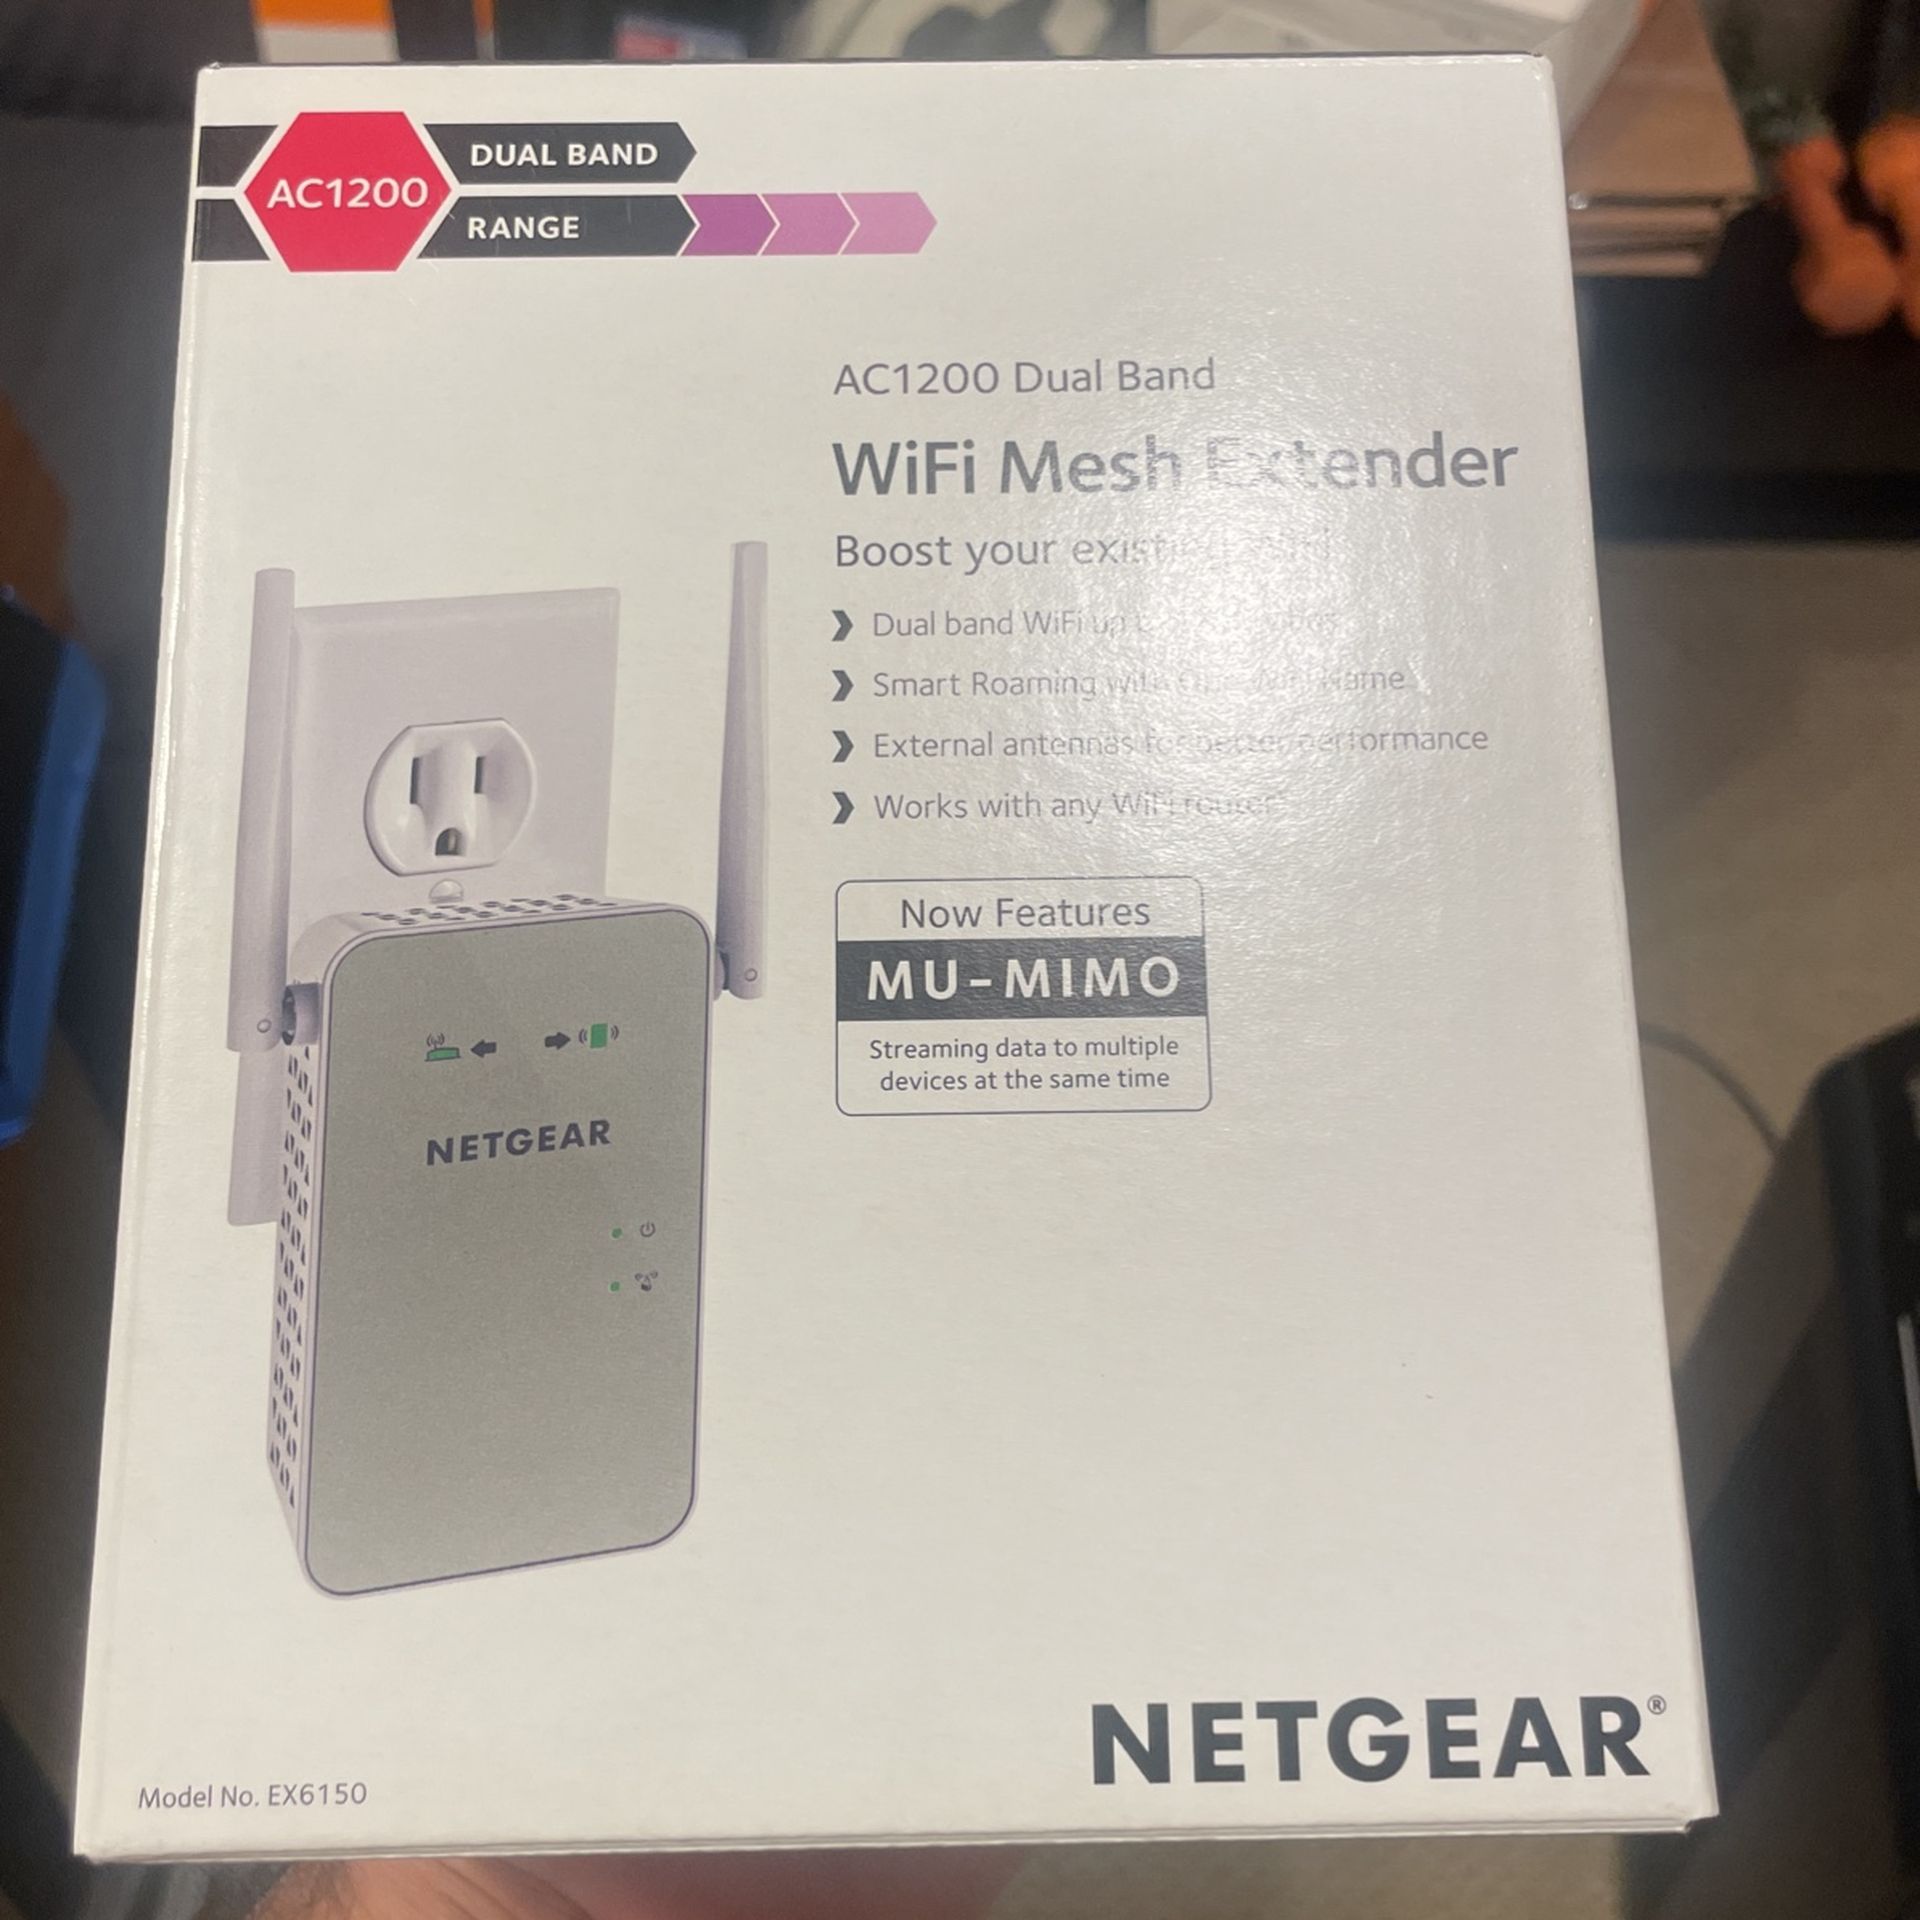 WiFi Mesh Extender